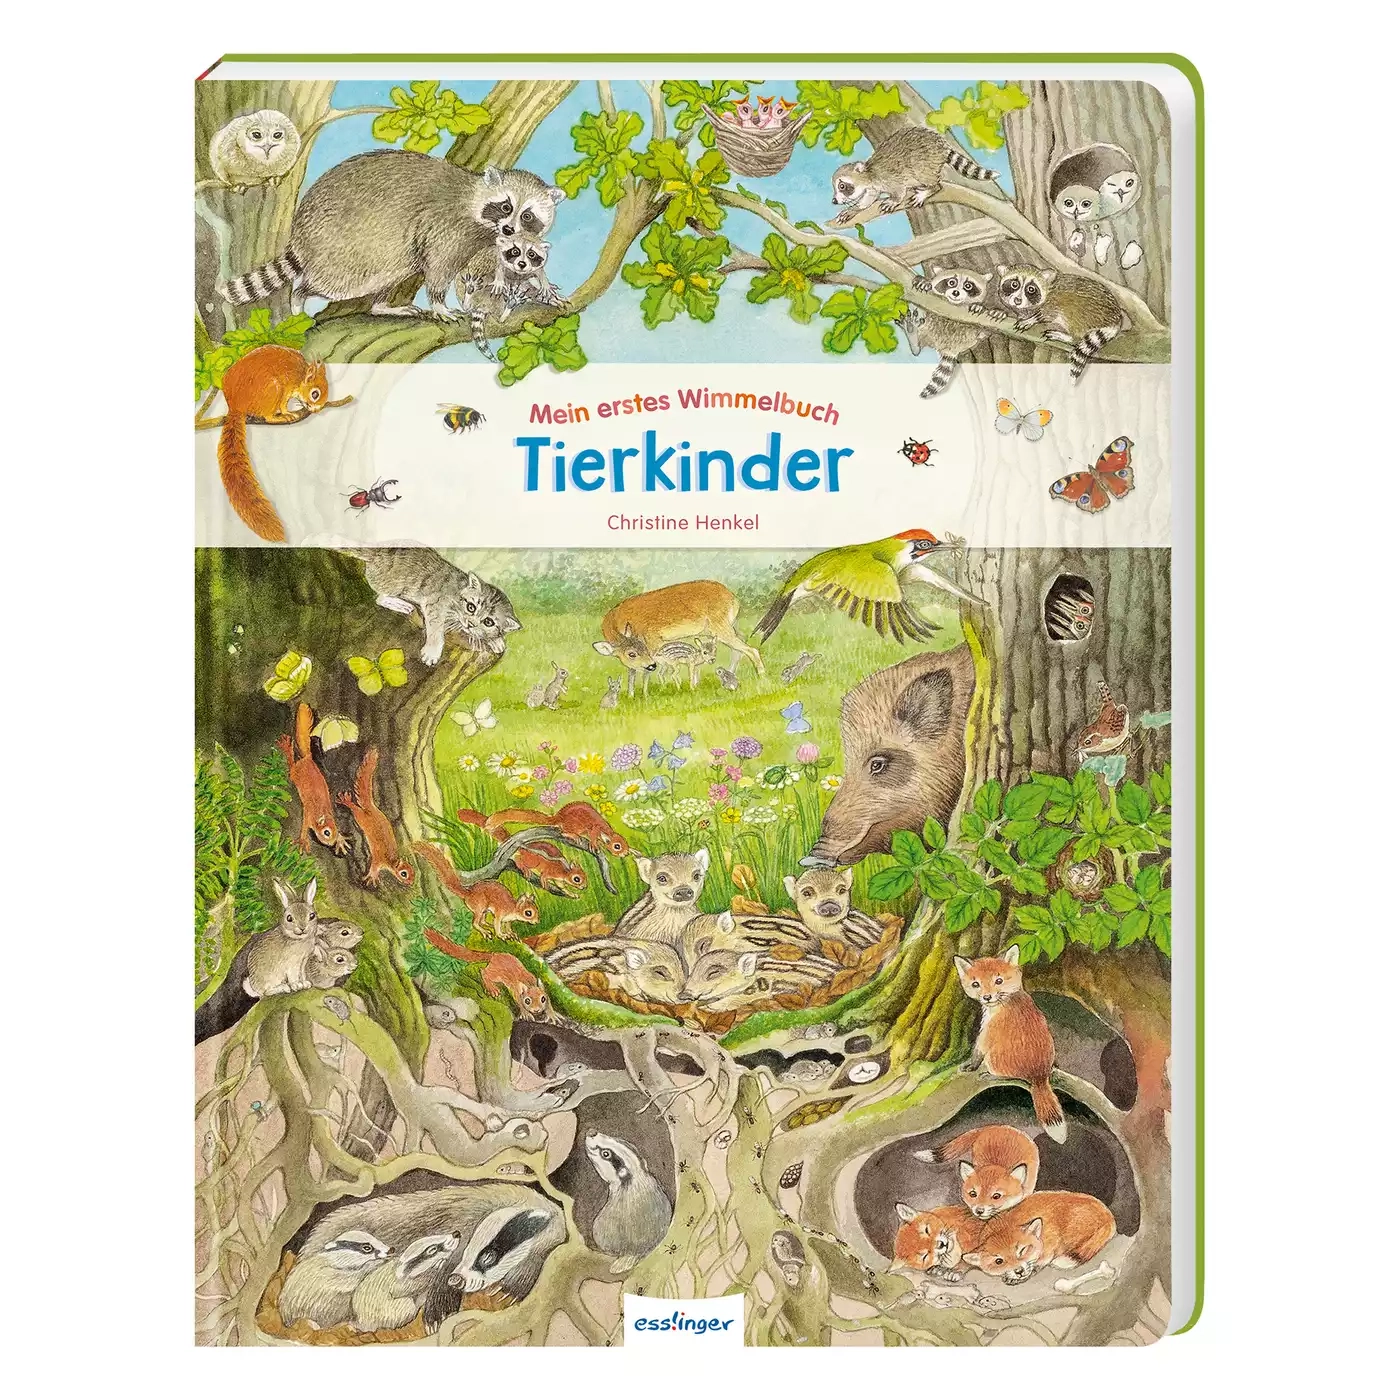 Mein erstes Wimmelbuch: Tierkinder ess!inger 2000577318001 3